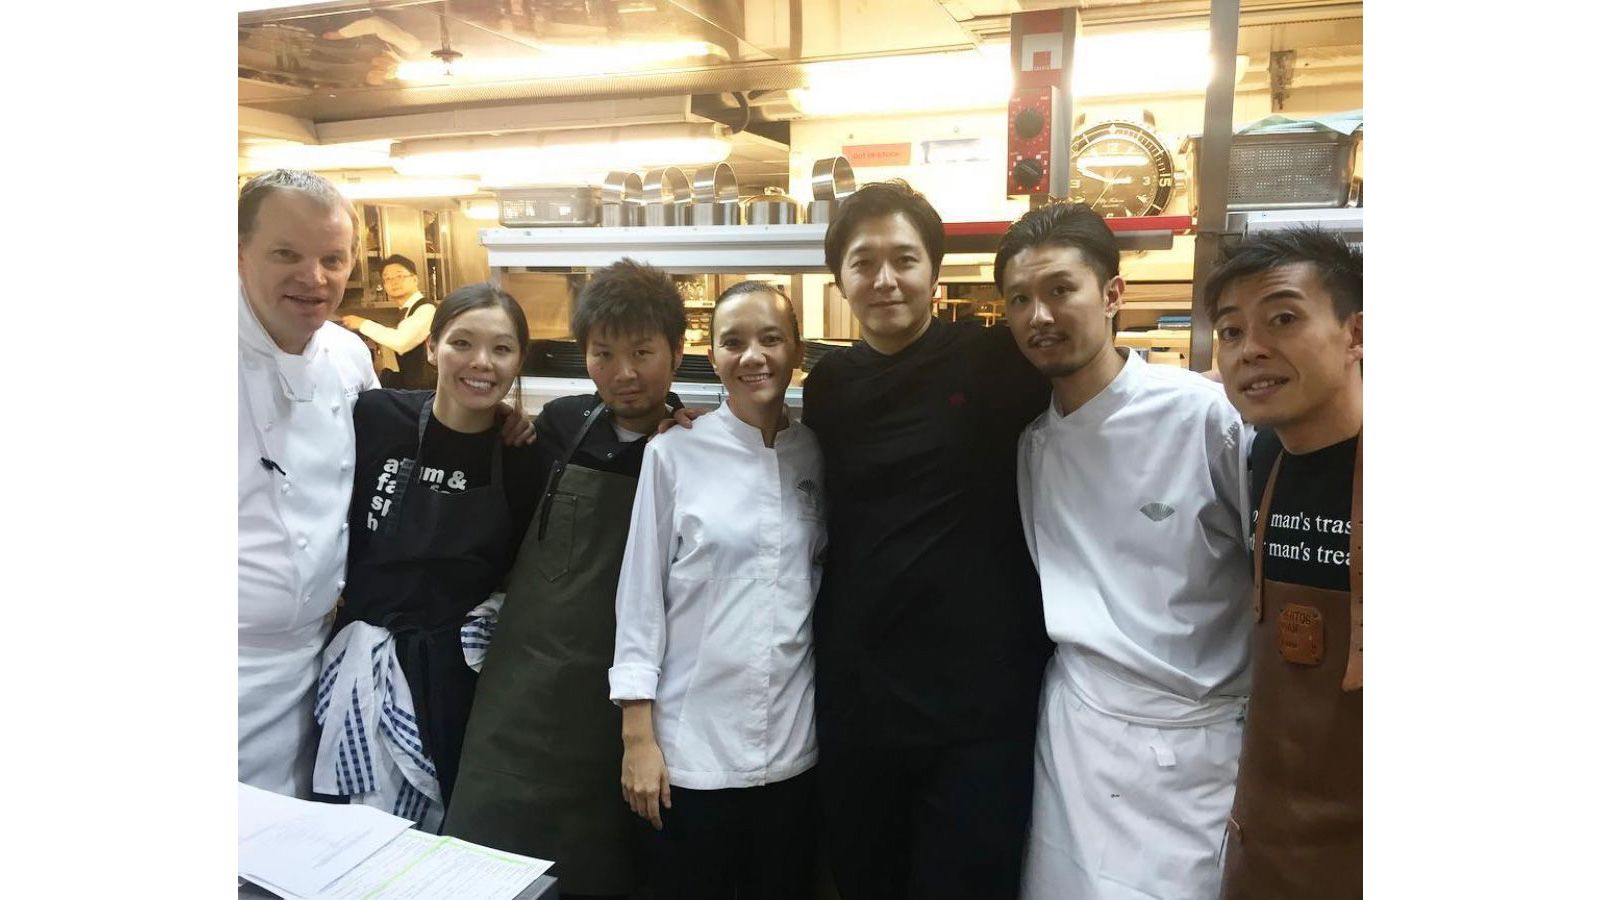 Pertemuan Dadakan 15 tahun yang lalu, 3 koki Jepang bertemu di bar Sydney. Mereka berpisah, namun ‘takdir’ mempertemukan mereka kembali di Hong Kong